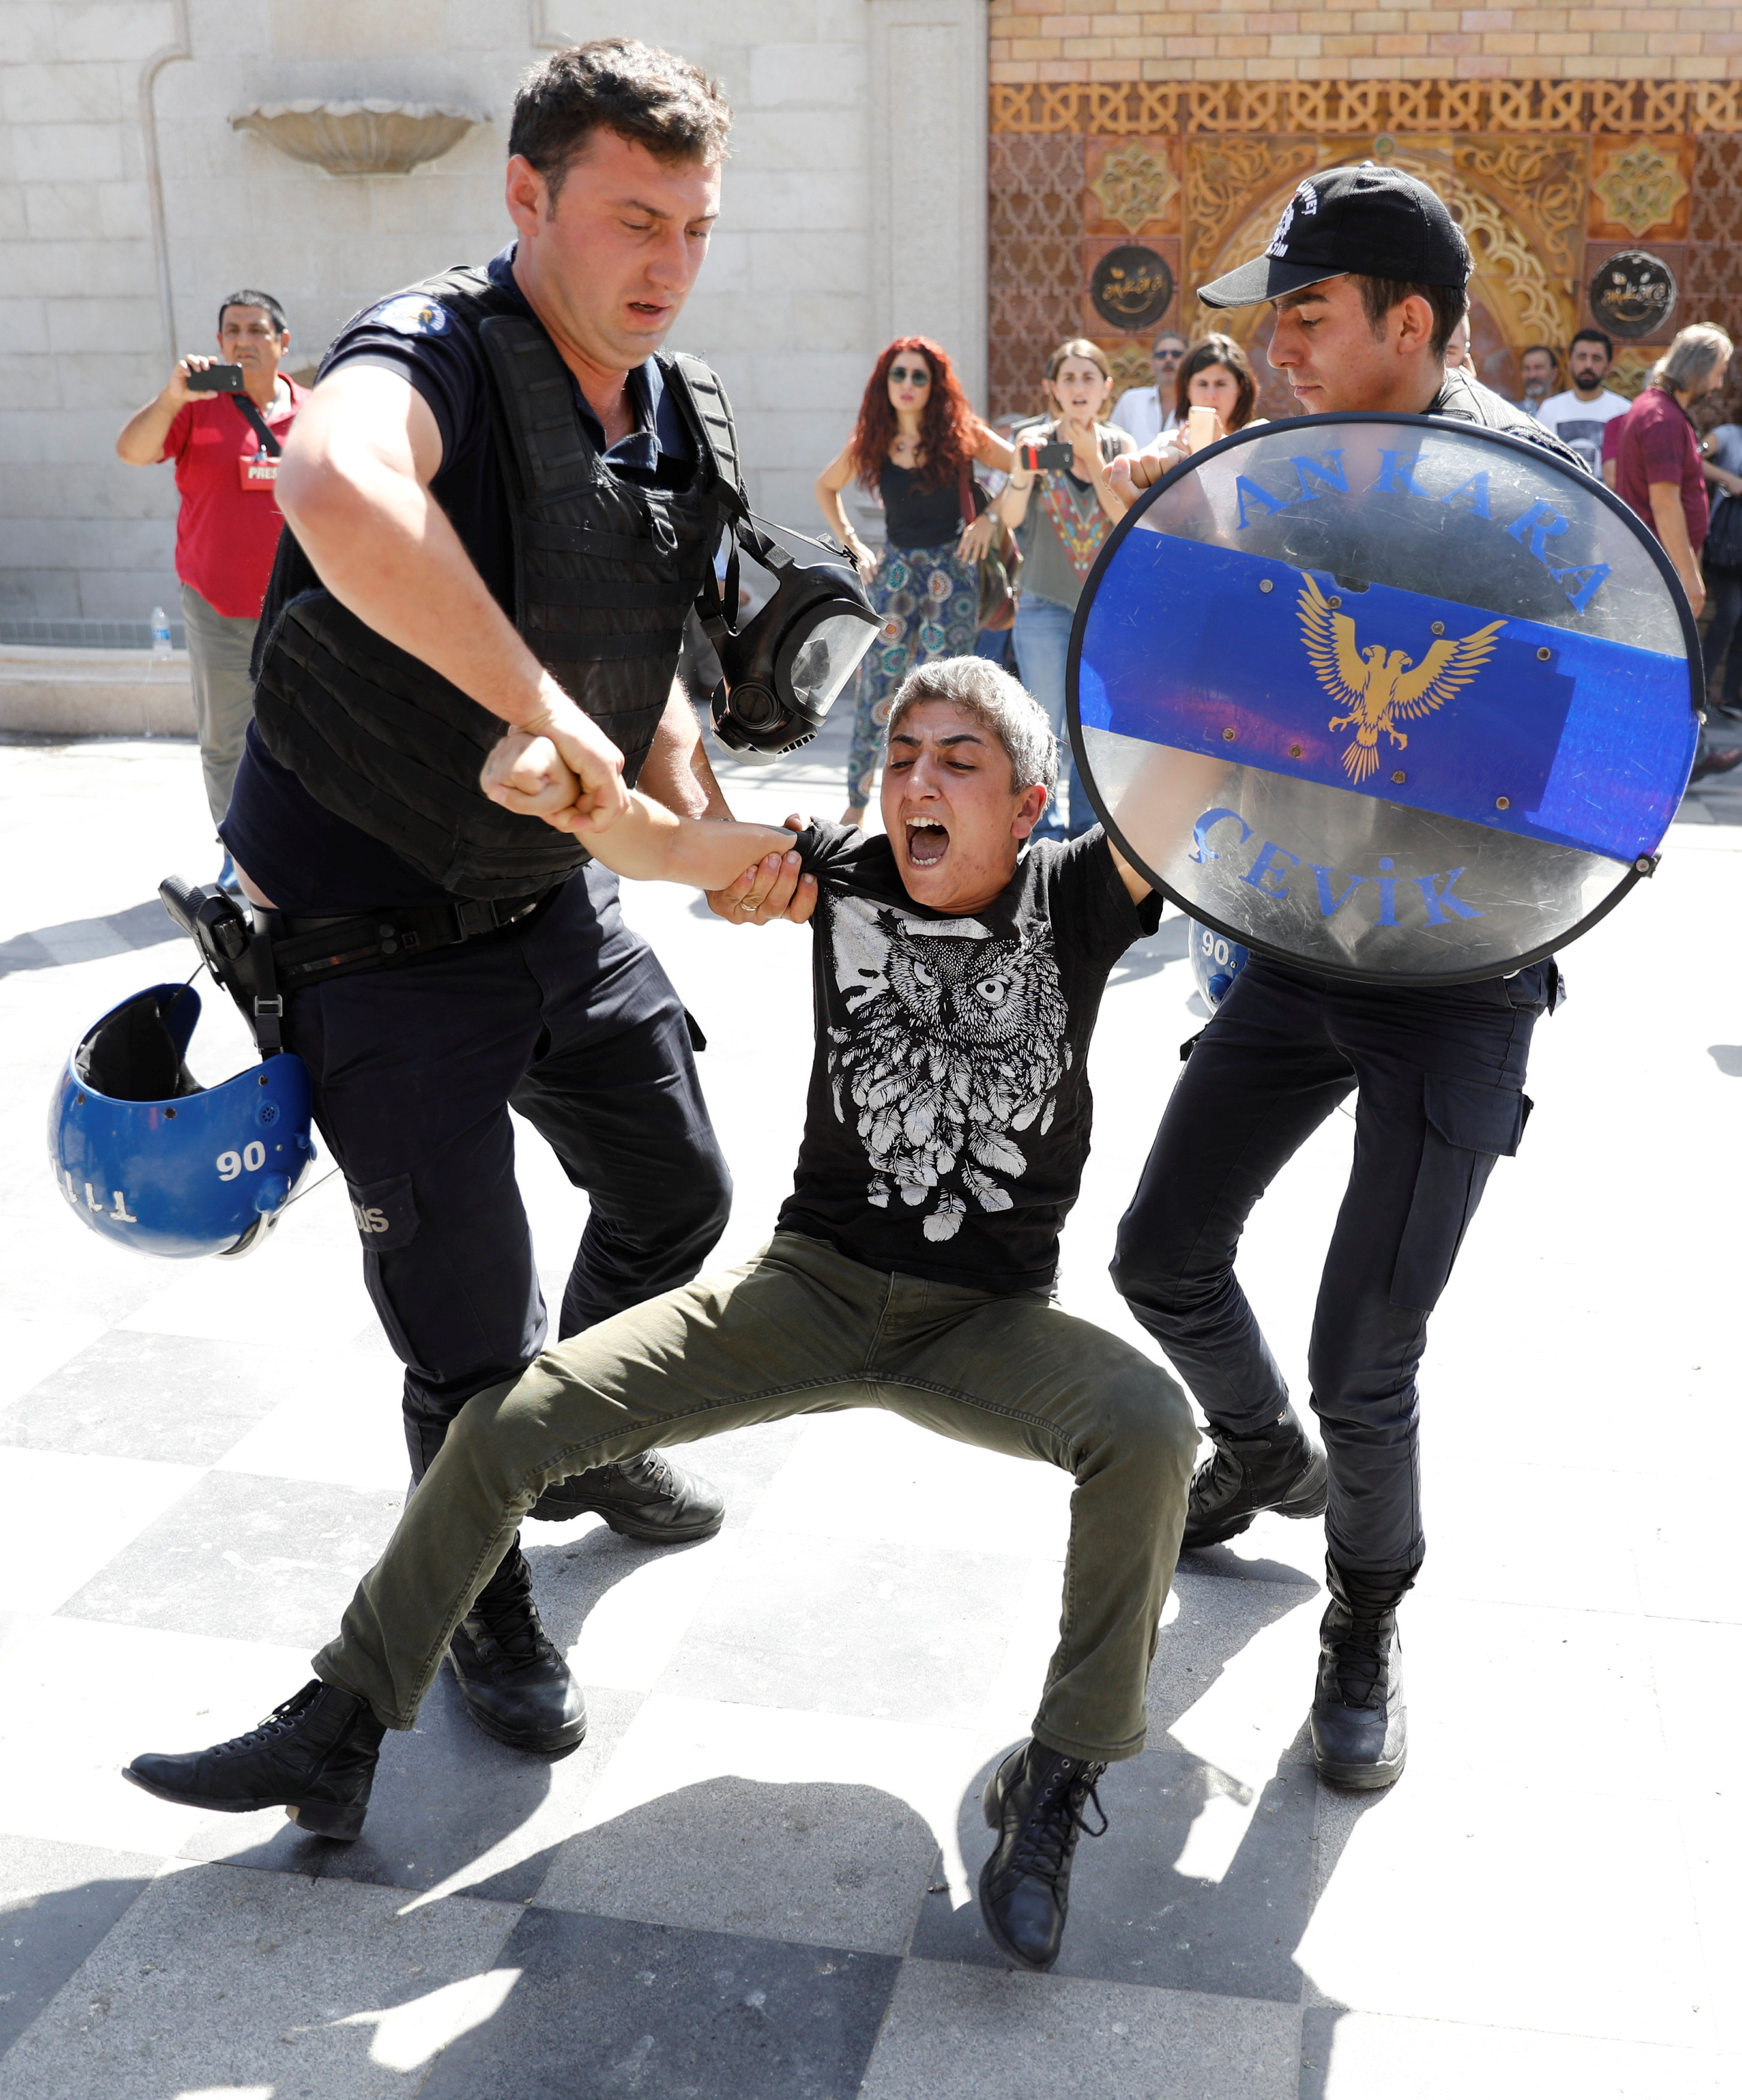 القبض على أحد المشاركين فى المظاهرة